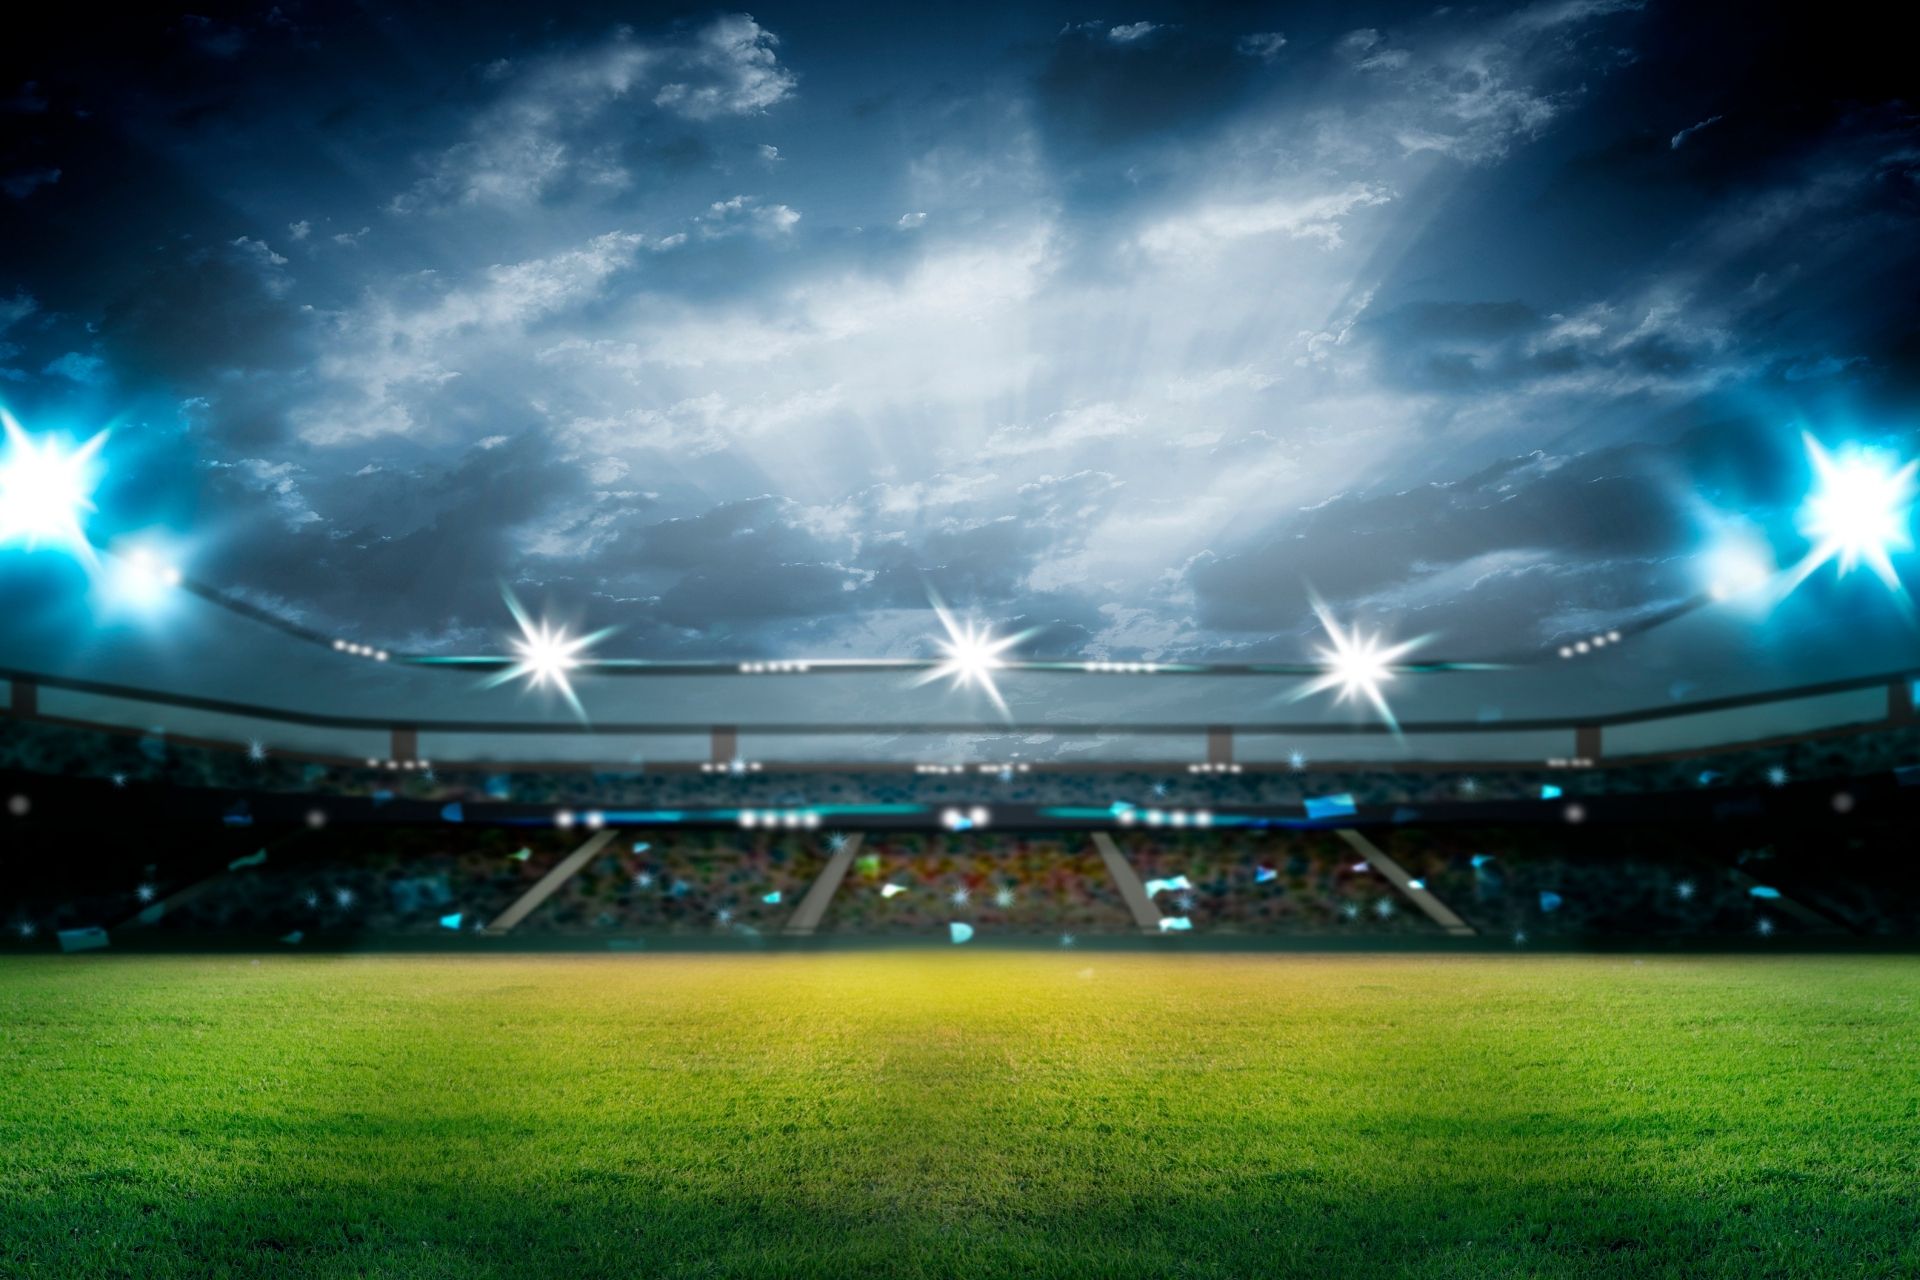 Na stadionie Molineux Stadium dnia 2021-09-18 11:30 odbył się mecz pomiędzy Wolves i Brentford: końcowy wynik 0-2